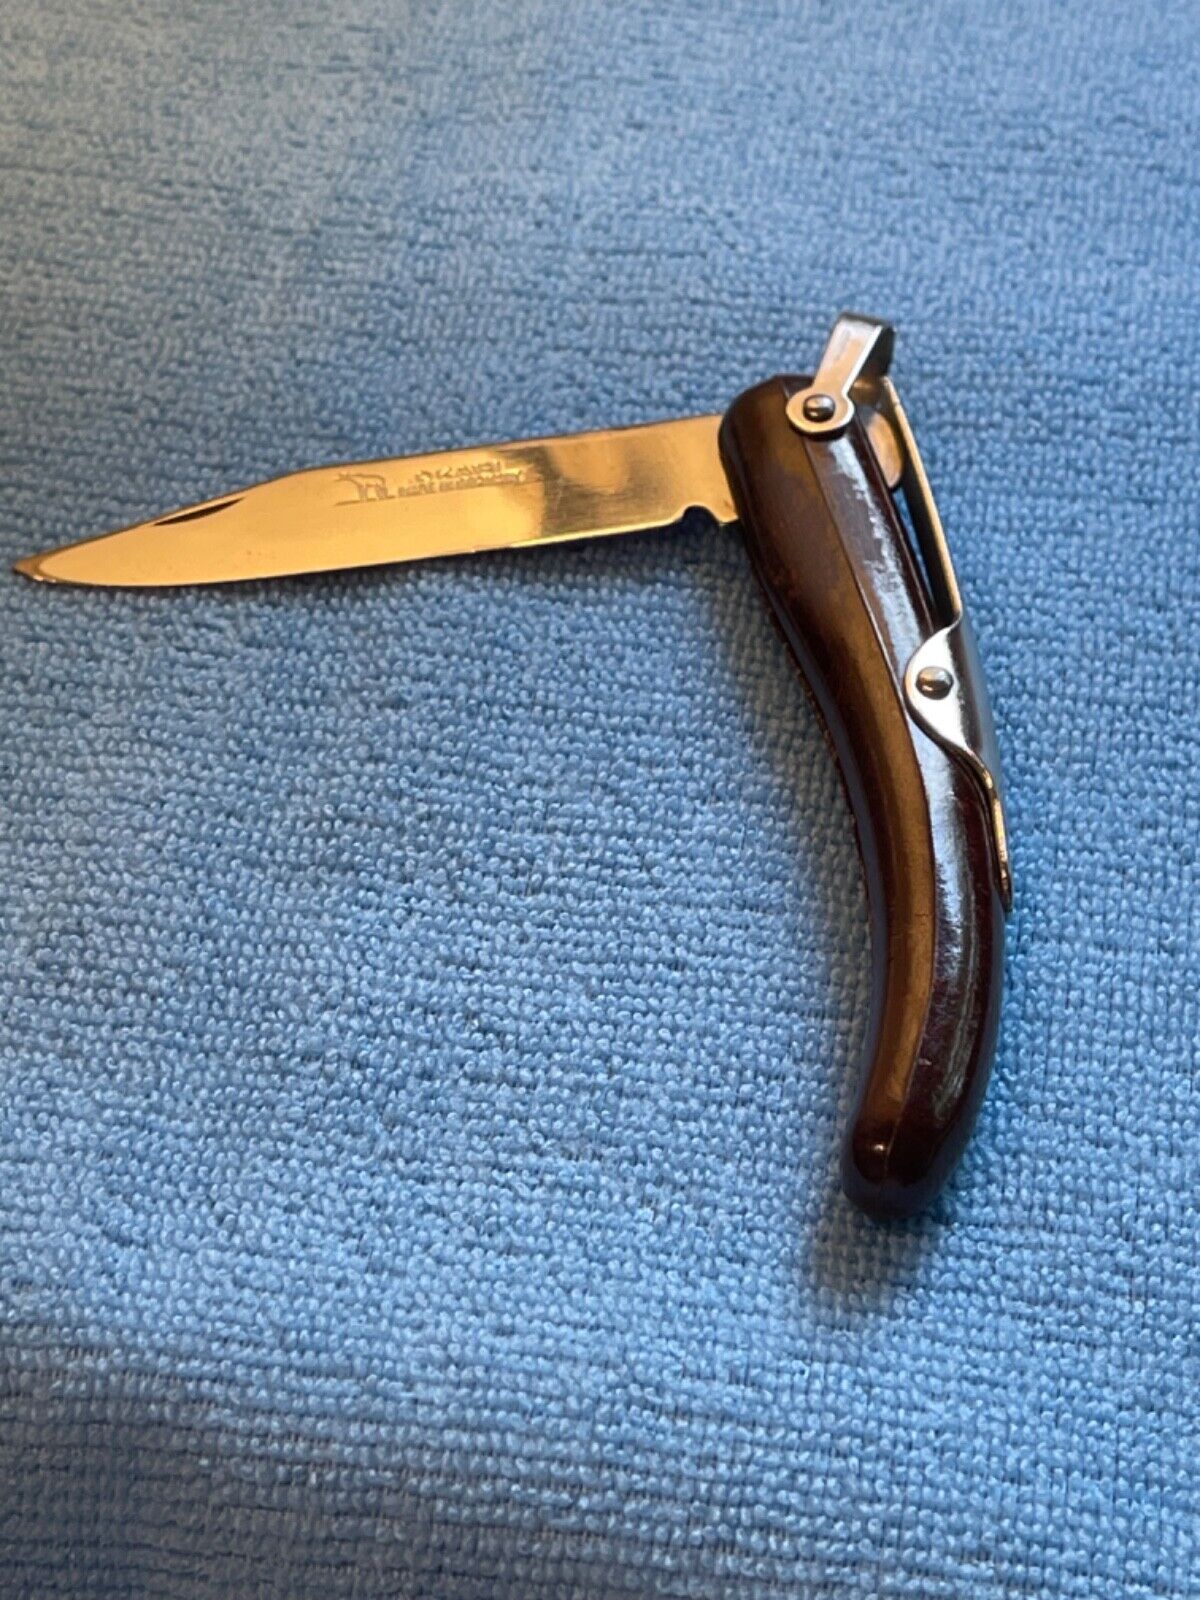 OKAPI vintage 100% original knife made in Germany